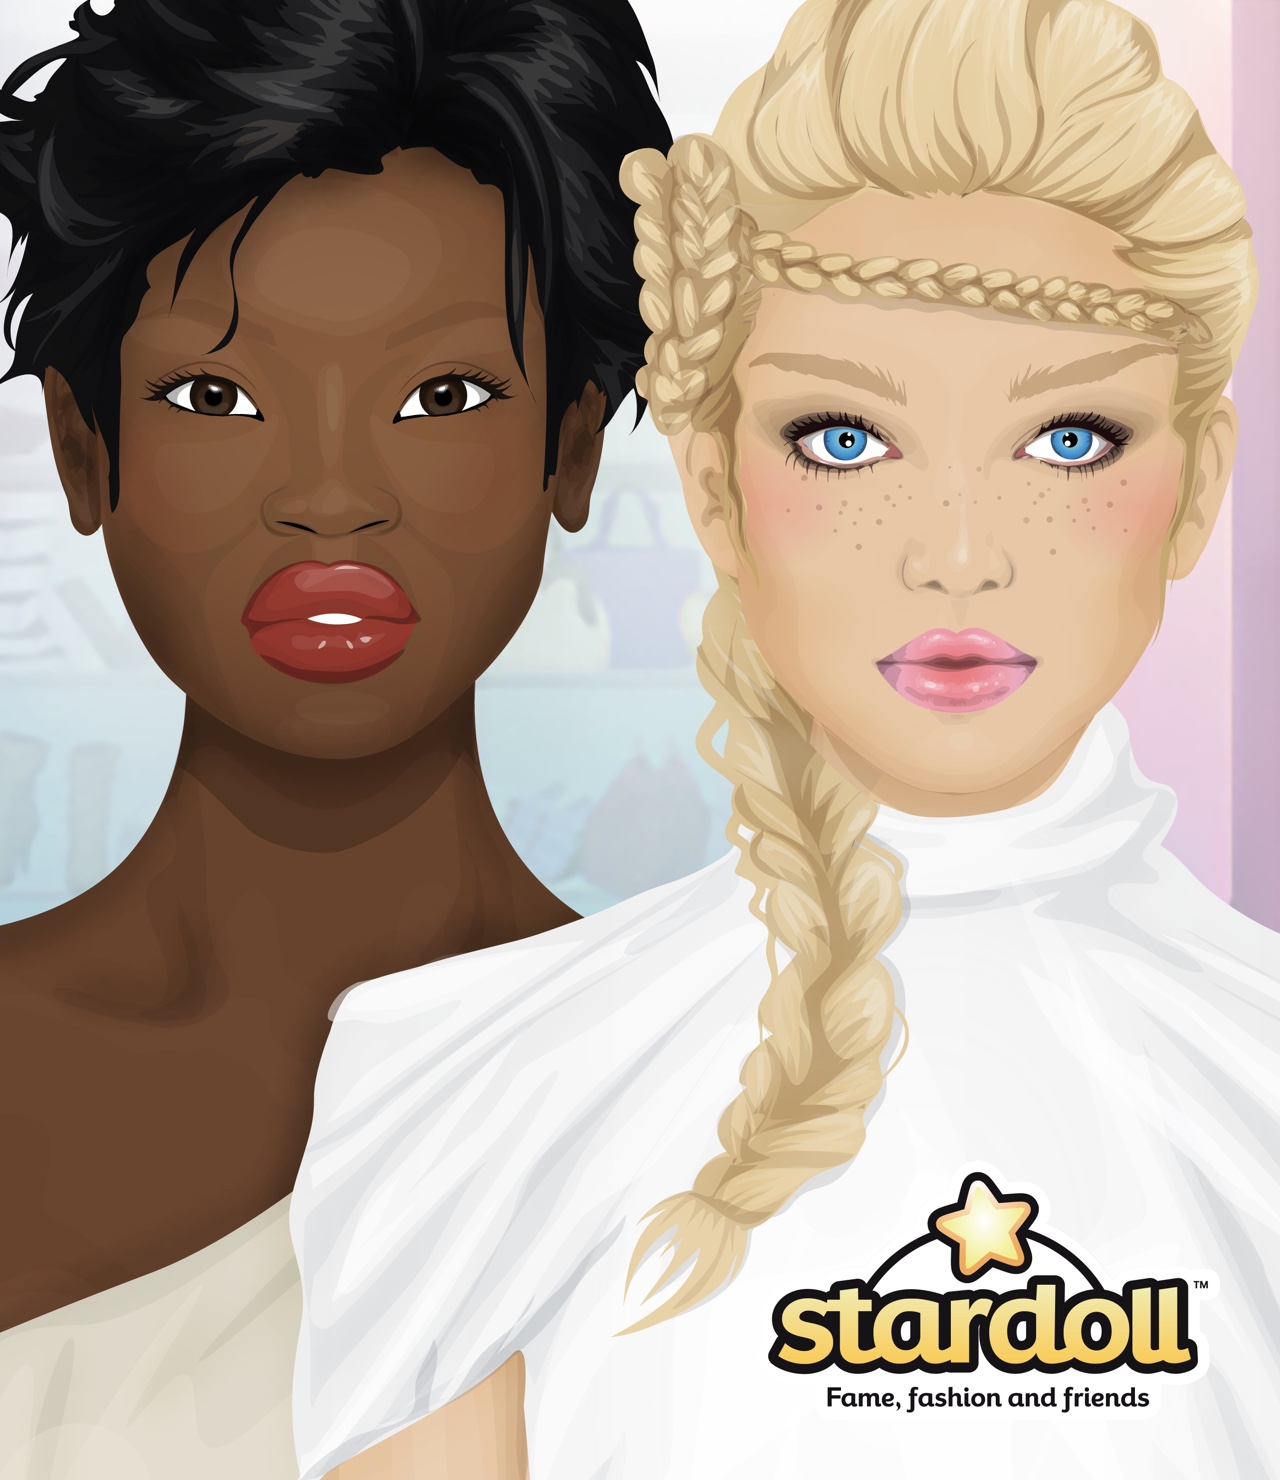 Stardoll campaign design